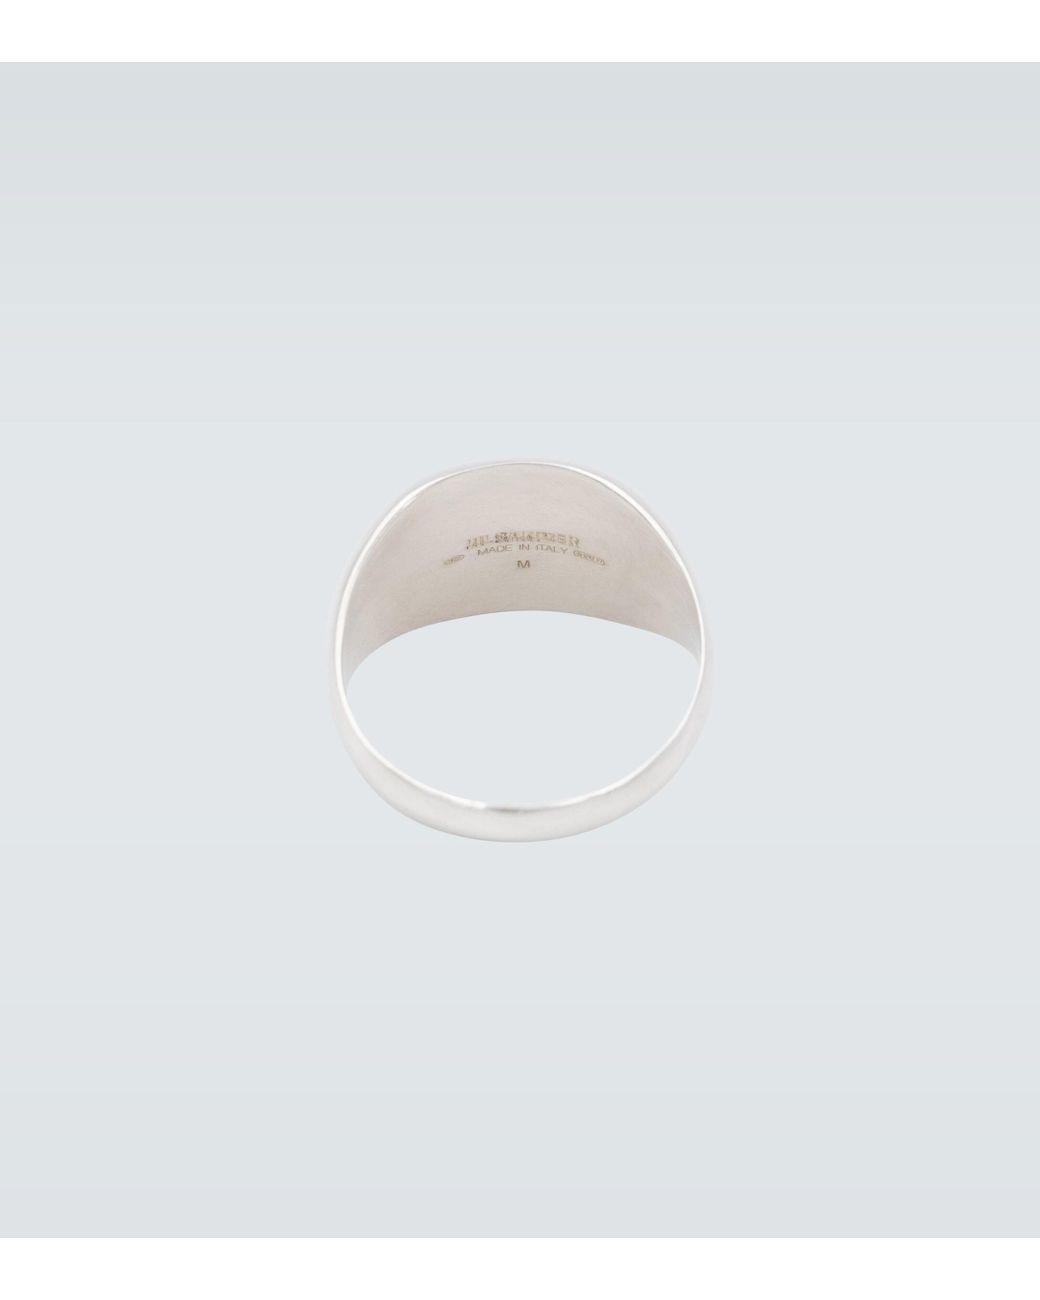 Jil Sander Classic Chevalier Ring in Metallic for Men | Lyst Australia